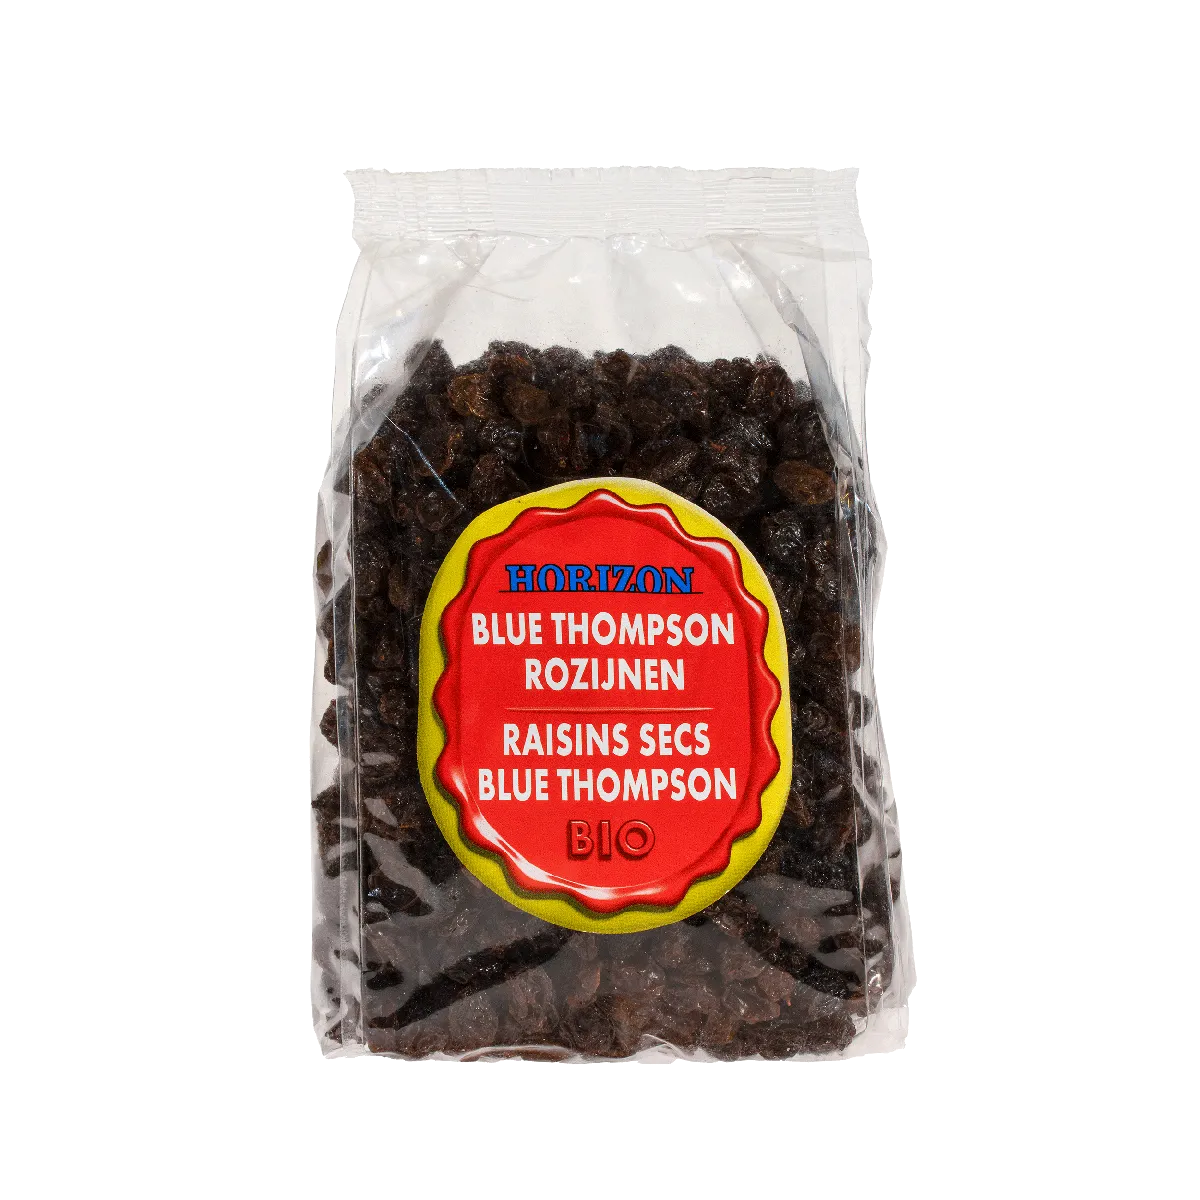 Horizon Raisins blue thompson bio 500g